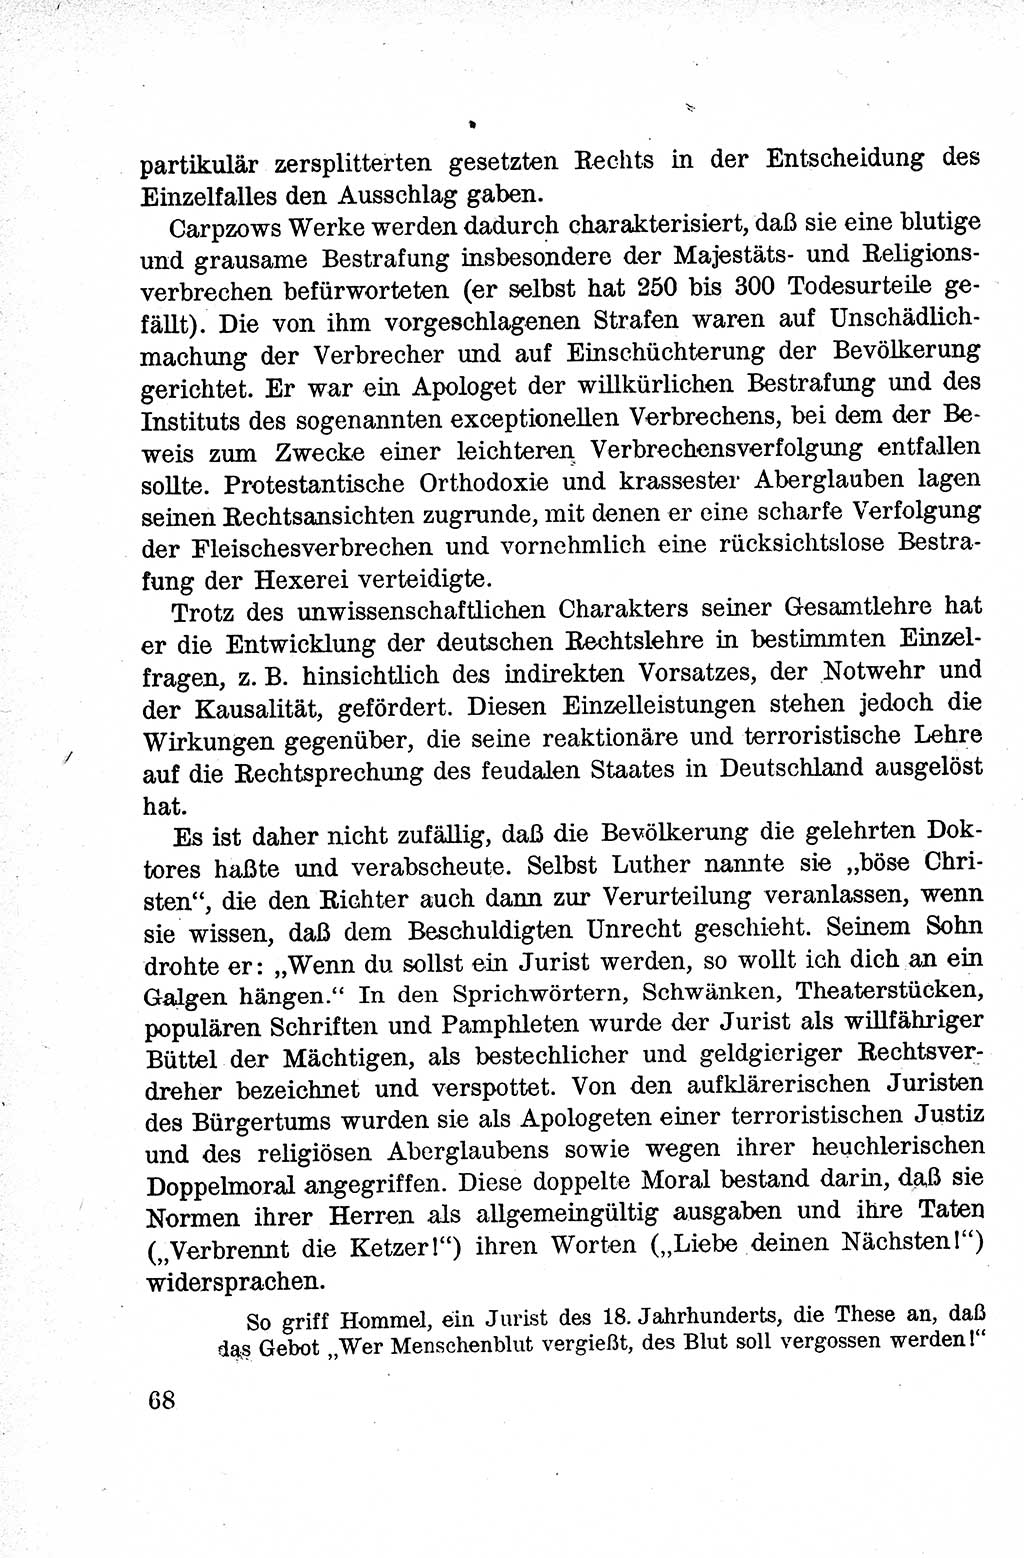 Lehrbuch des Strafrechts der Deutschen Demokratischen Republik (DDR), Allgemeiner Teil 1959, Seite 68 (Lb. Strafr. DDR AT 1959, S. 68)